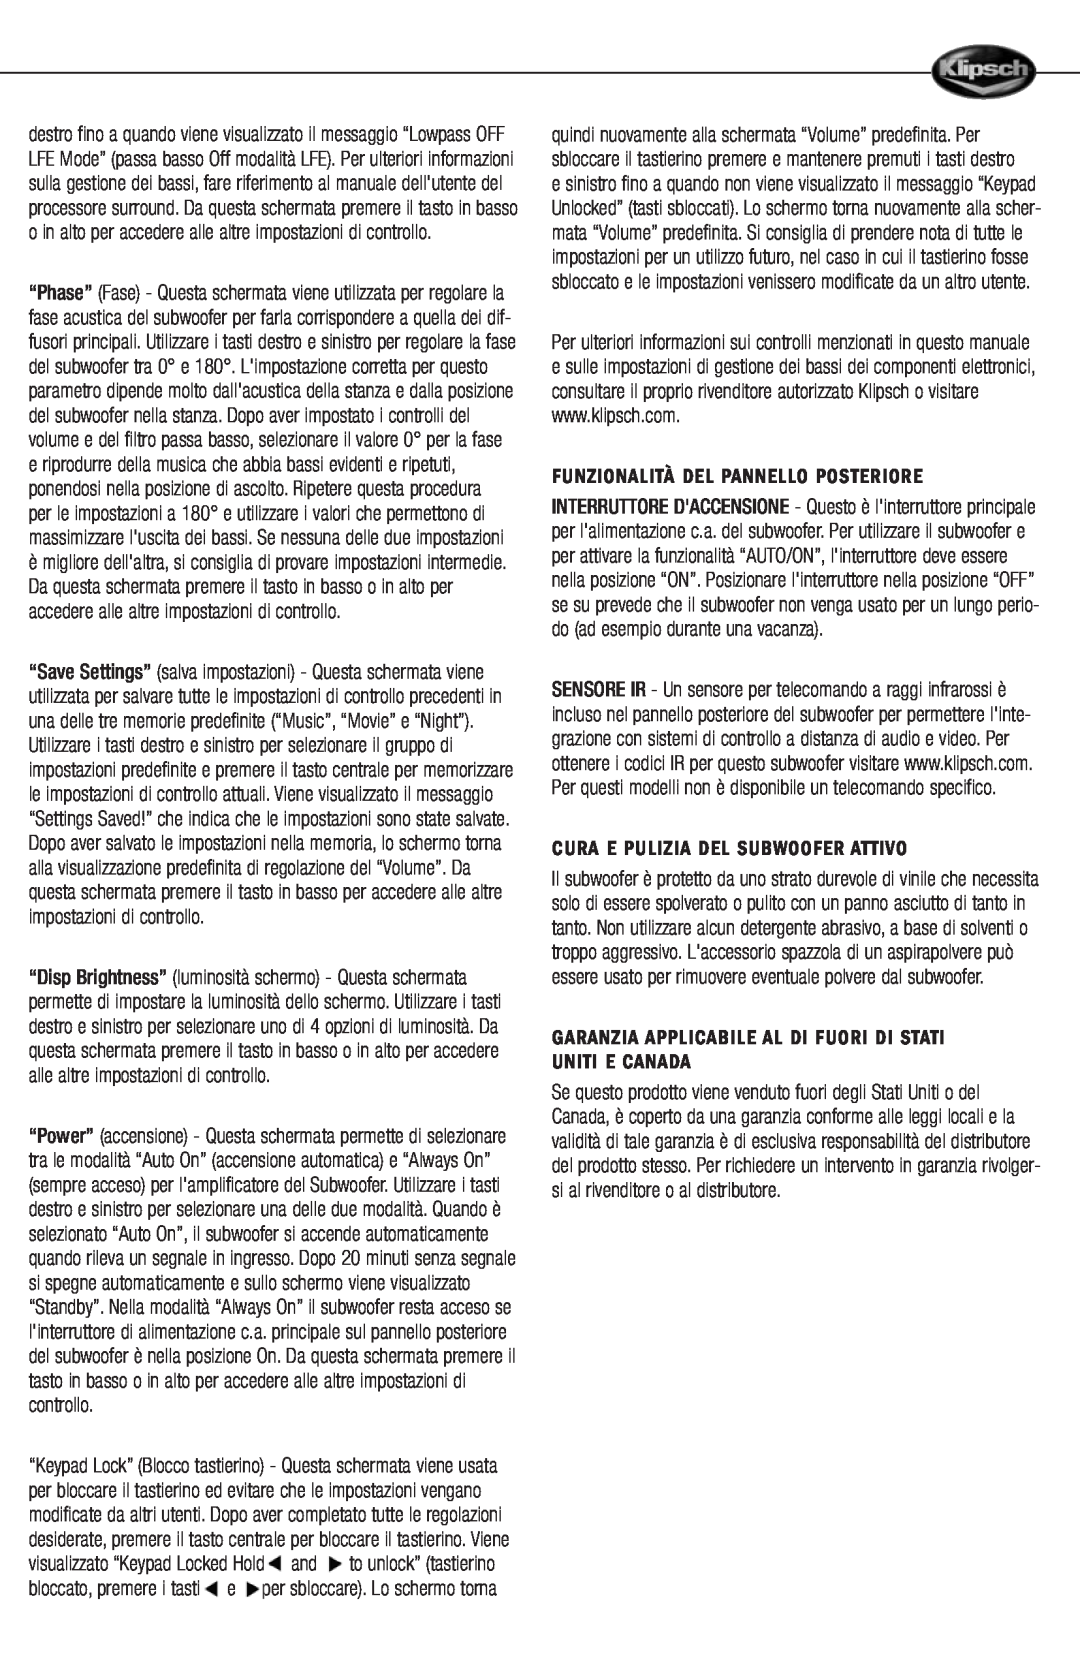 Klipsch 12d manual Funzionalità Del Pannello Posteriore, Cura E Pulizia Del Subwoofer Attivo 